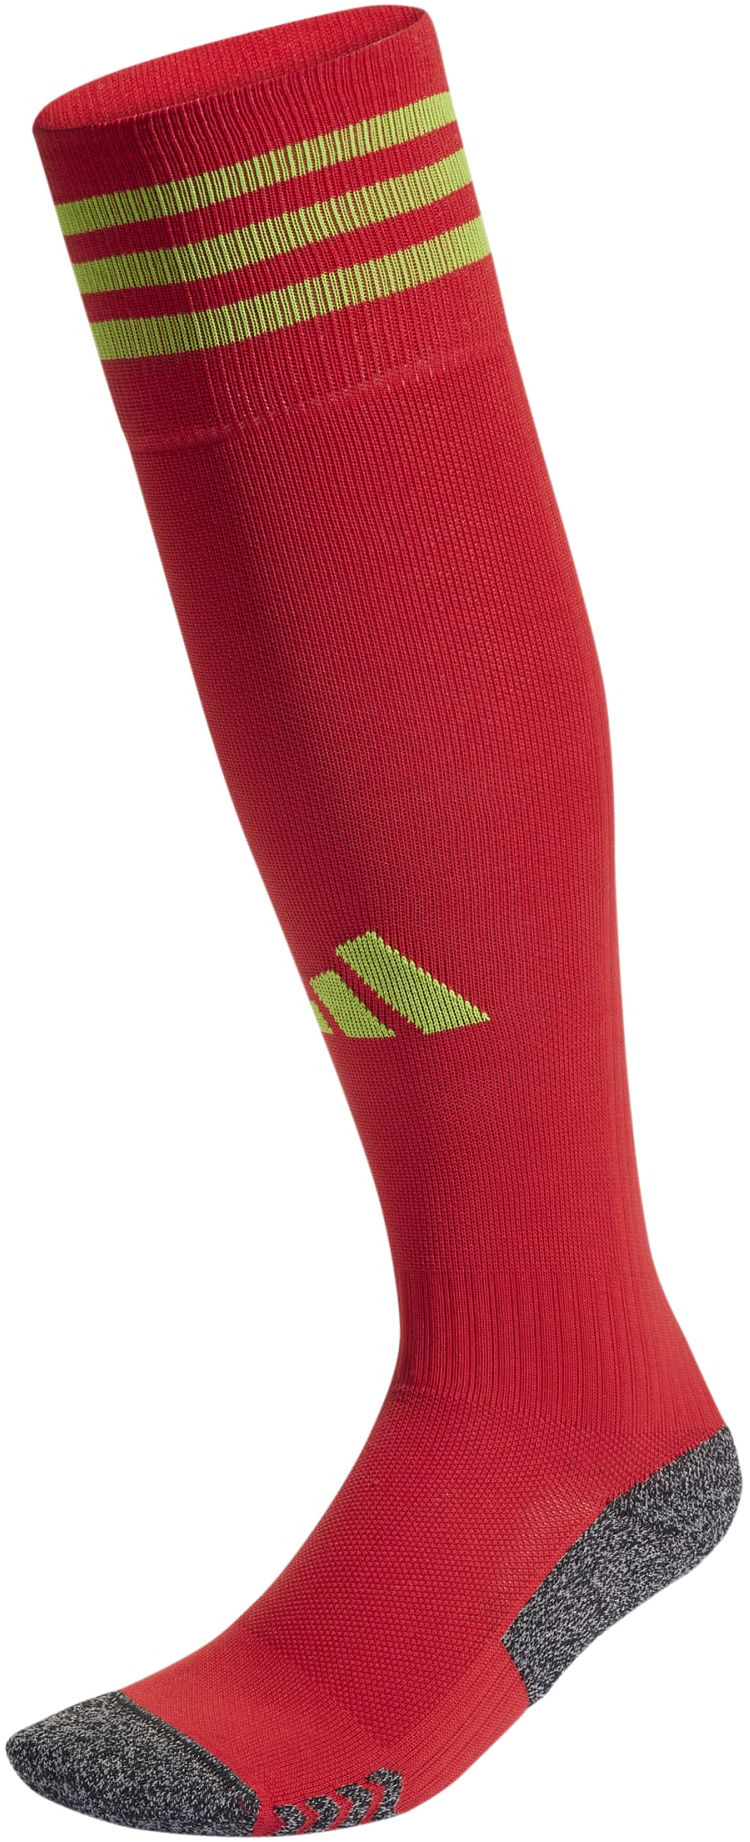 Футболни чорапи adidas ADI 23 SOCK